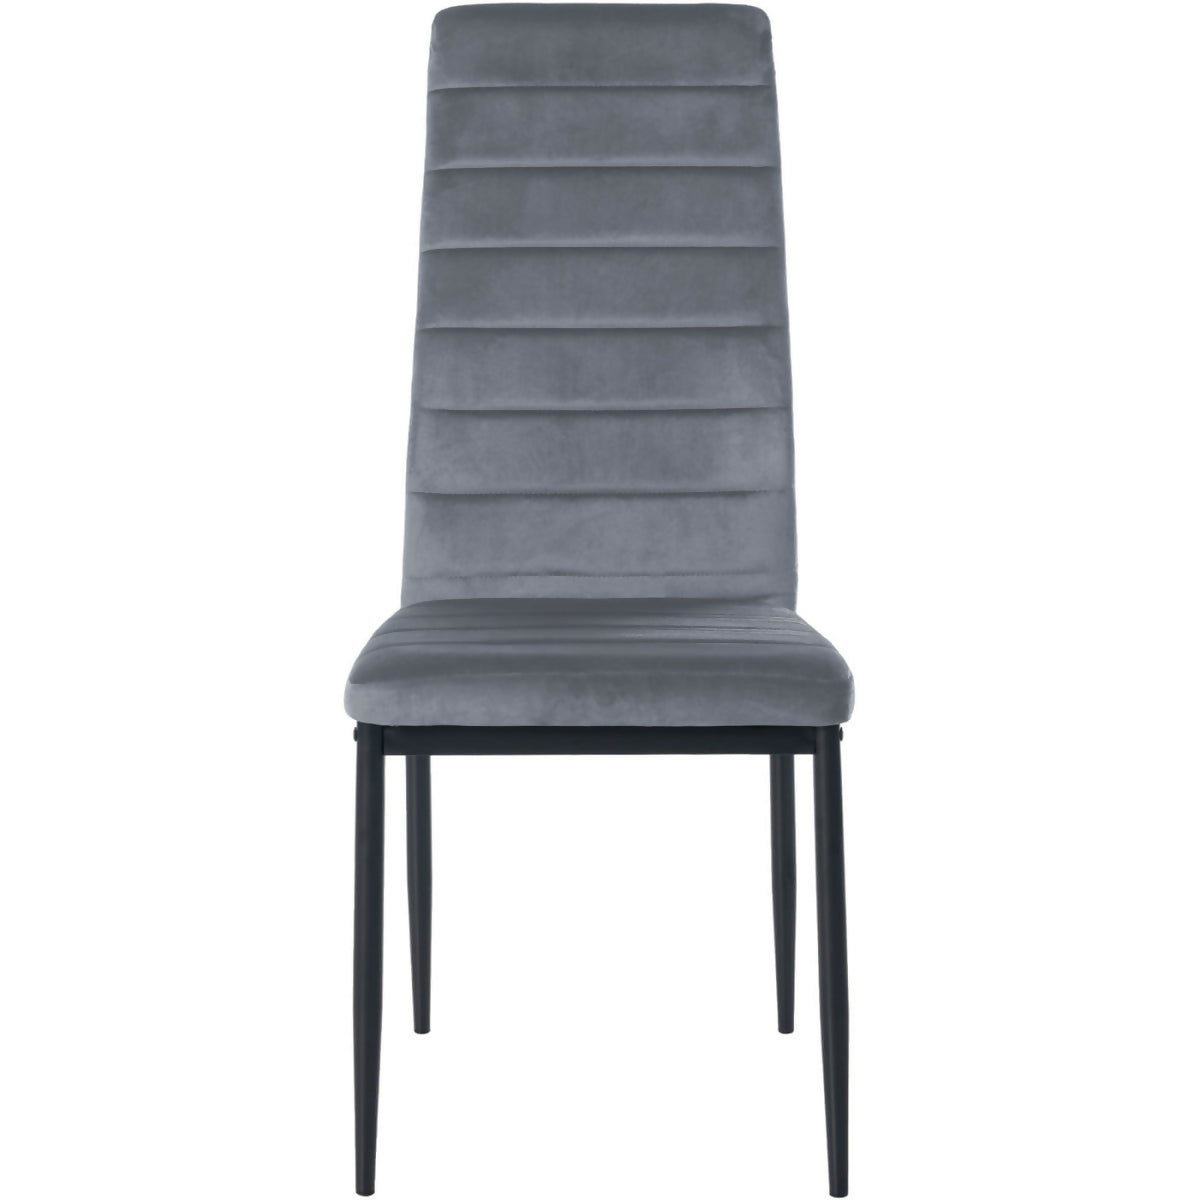 Mayfair Velvet Chair - Light gray - 0